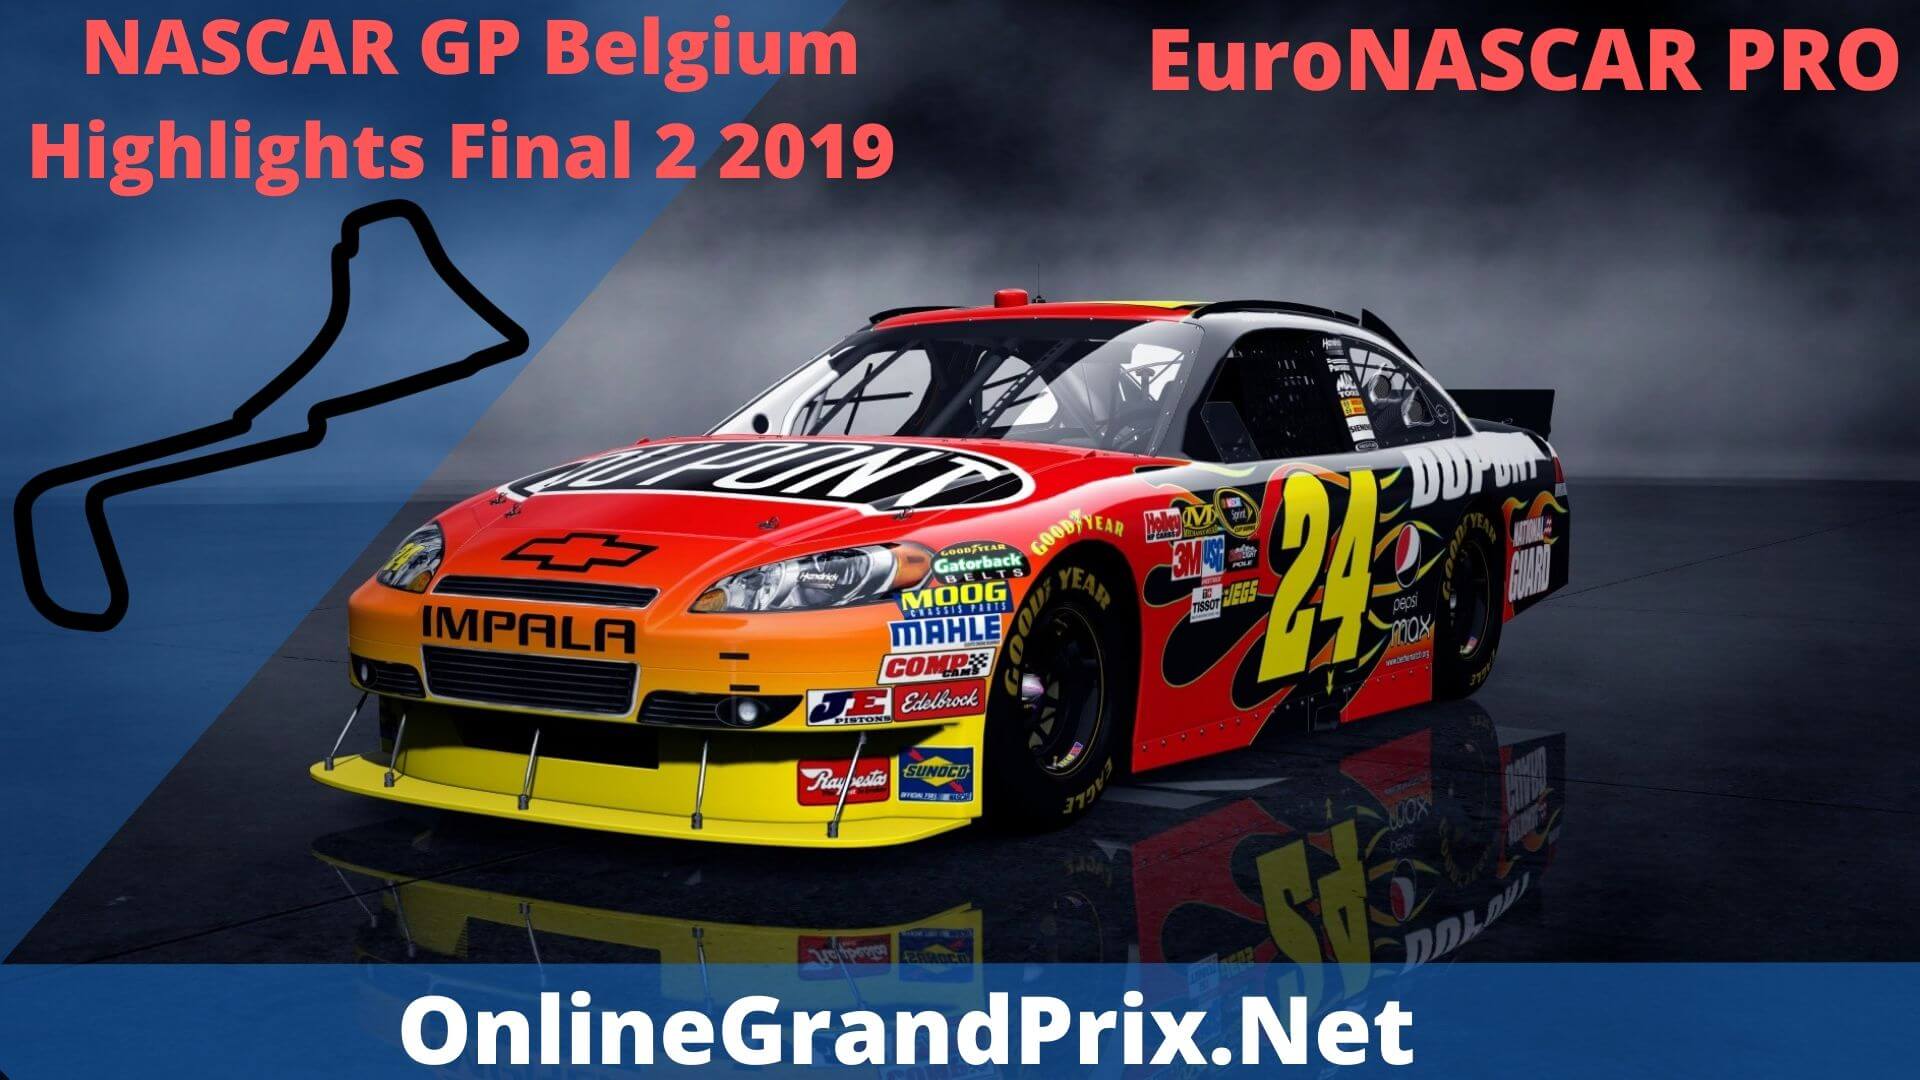 NASCAR GP Belgium Final 2 Highlights 2019